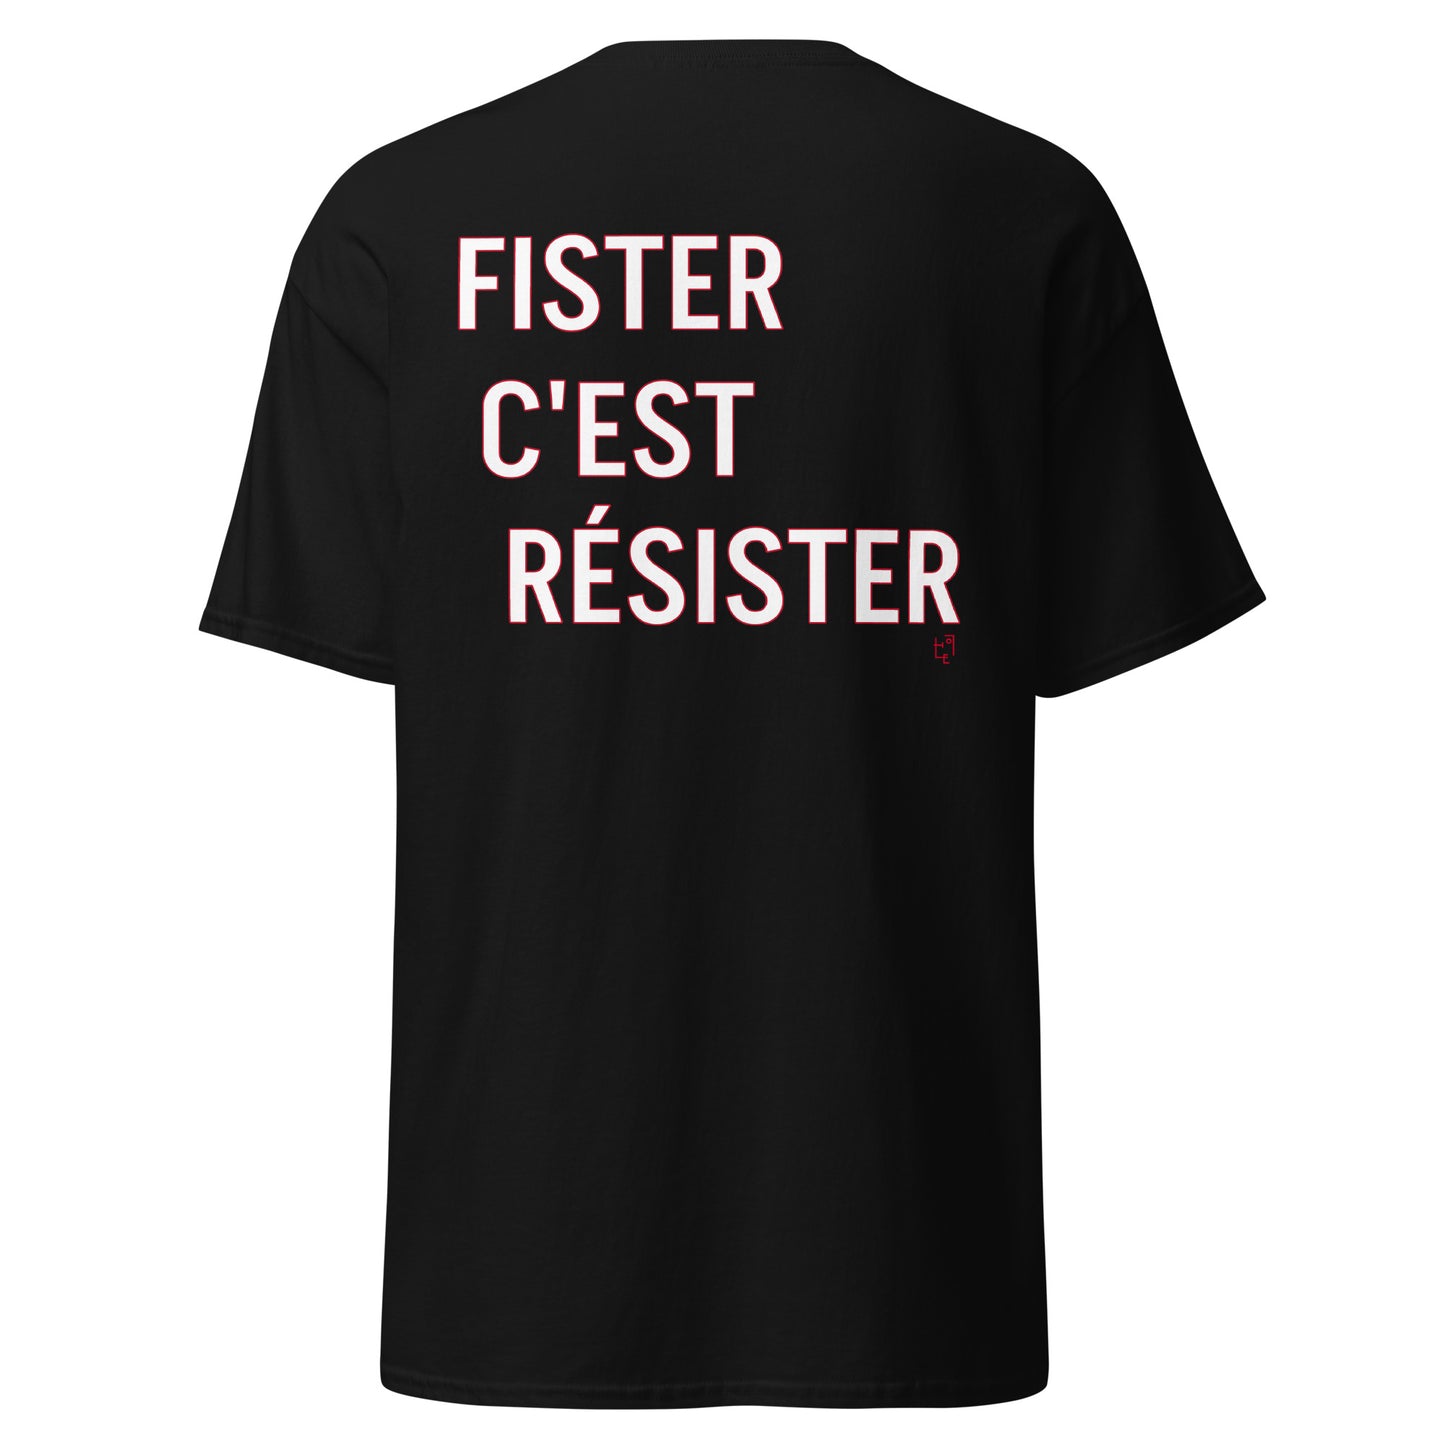 FISTER C'EST RESISTER T